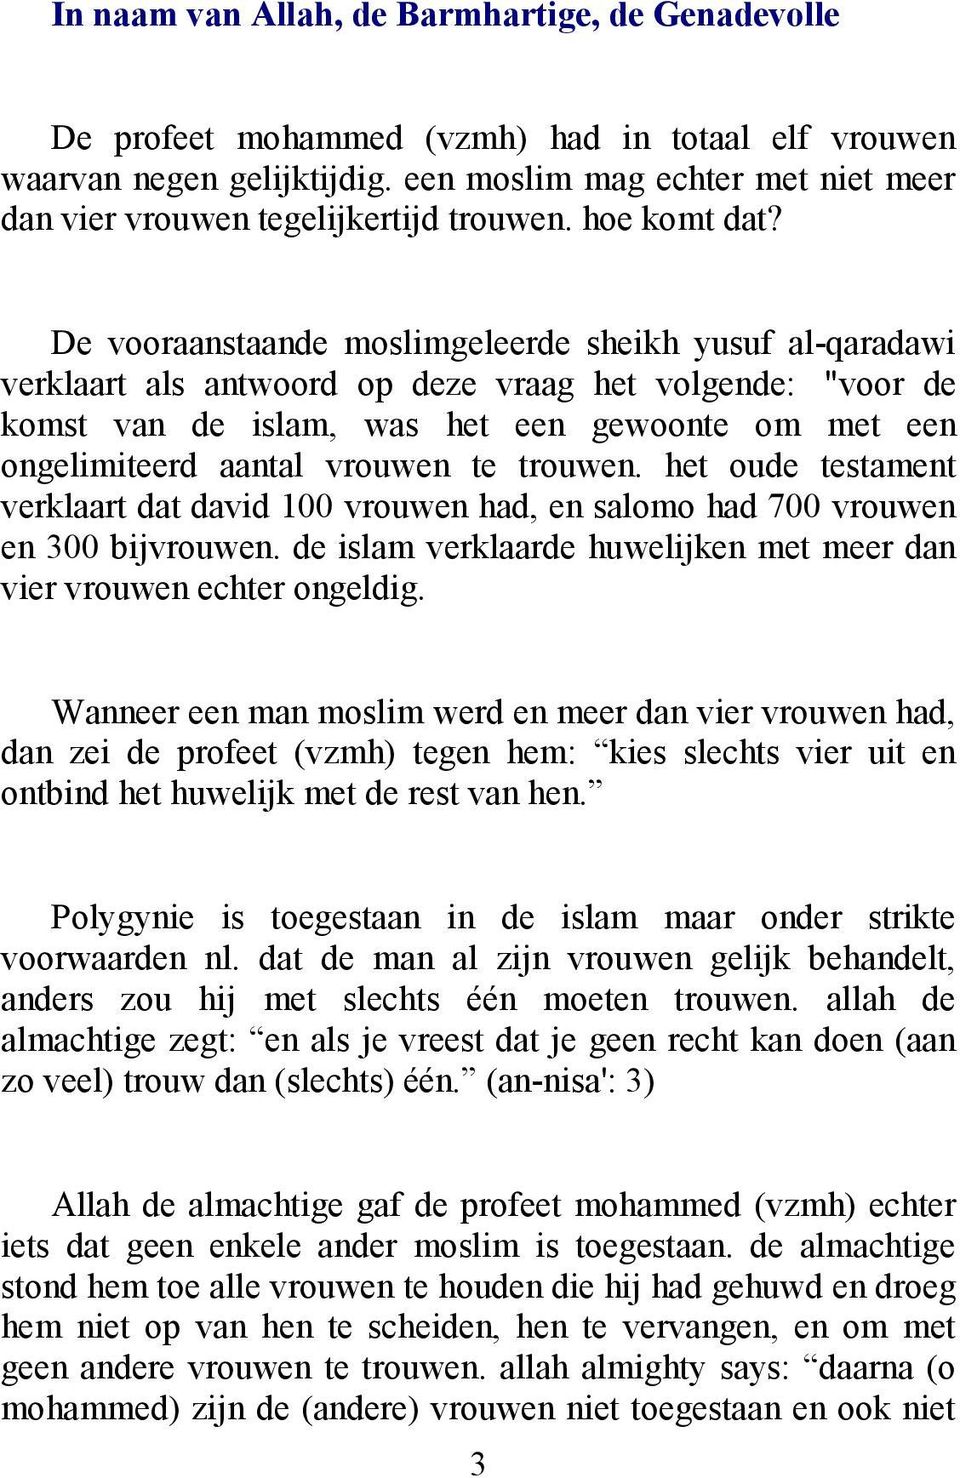 De vooraanstaande moslimgeleerde sheikh yusuf al-qaradawi verklaart als antwoord op deze vraag het volgende: "voor de komst van de islam, was het een gewoonte om met een ongelimiteerd aantal vrouwen